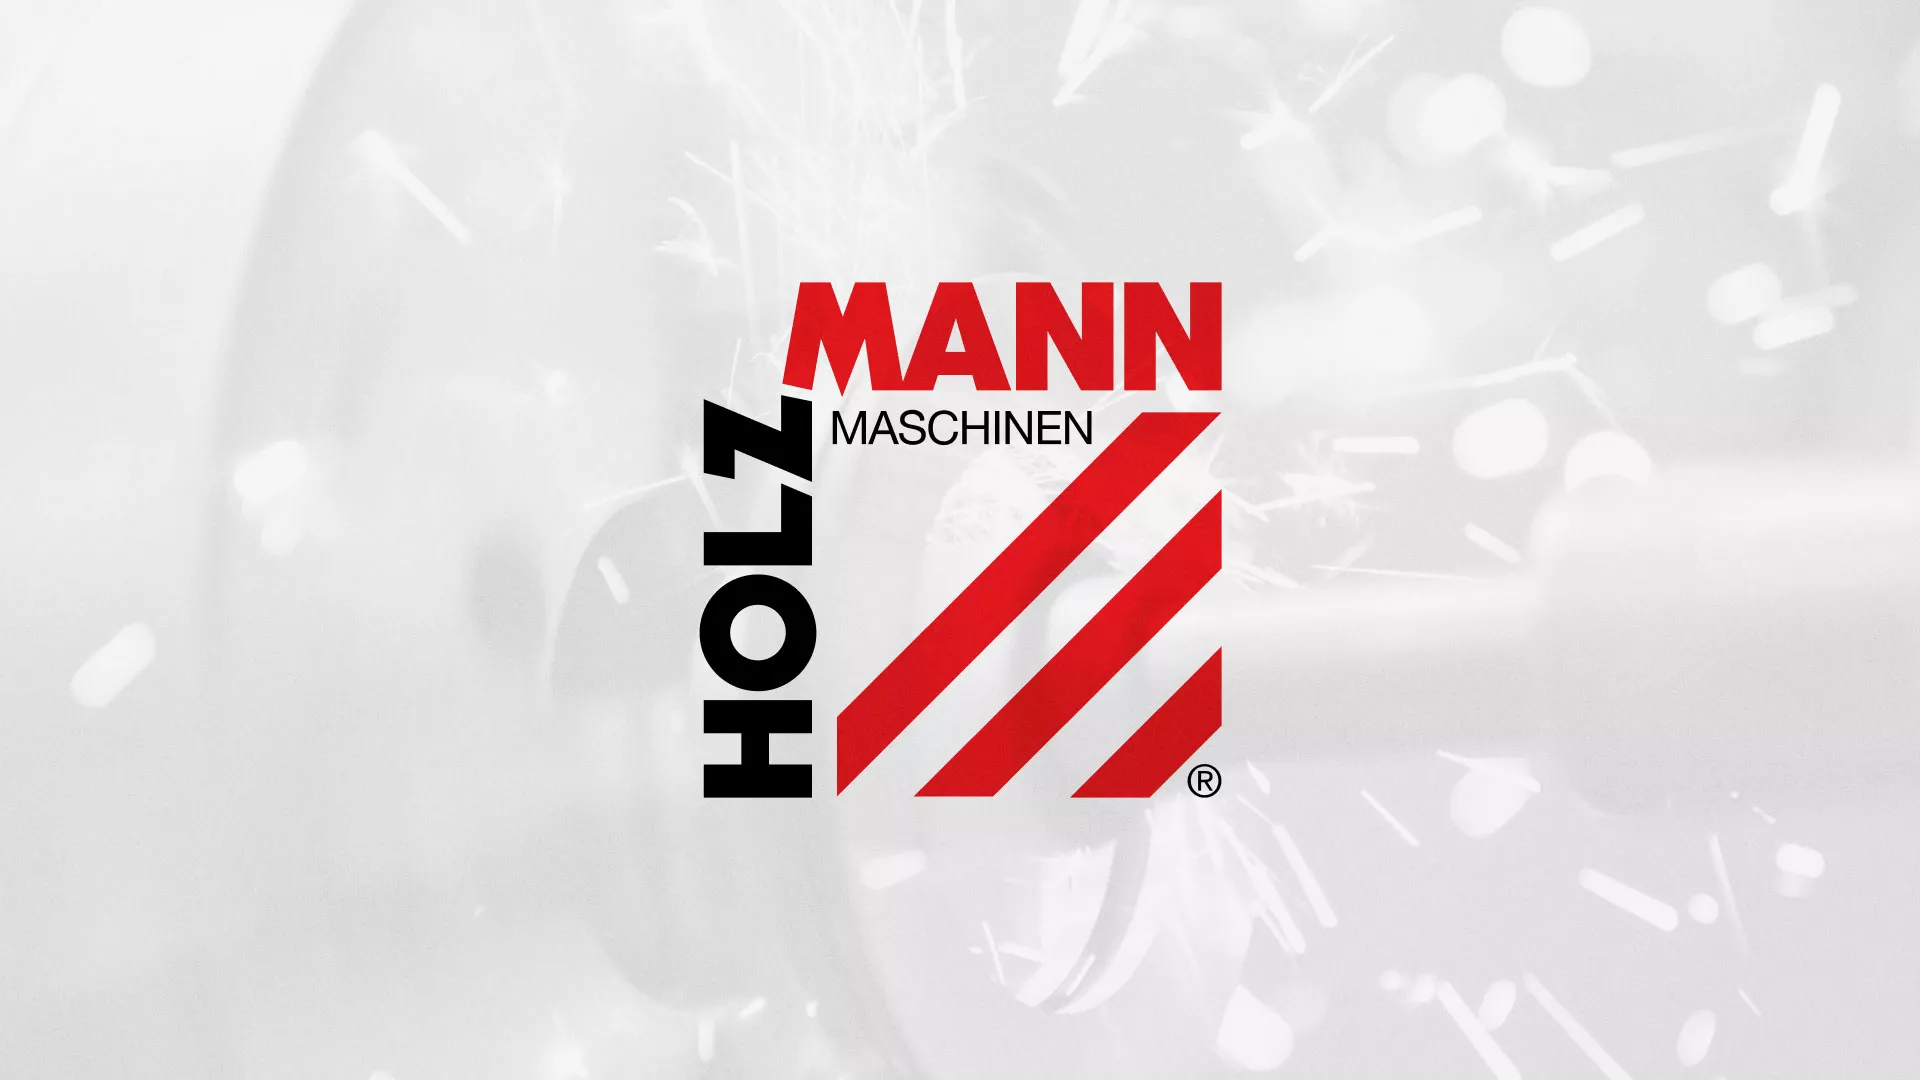 Создание сайта компании «HOLZMANN Maschinen GmbH» в Павловском Посаде